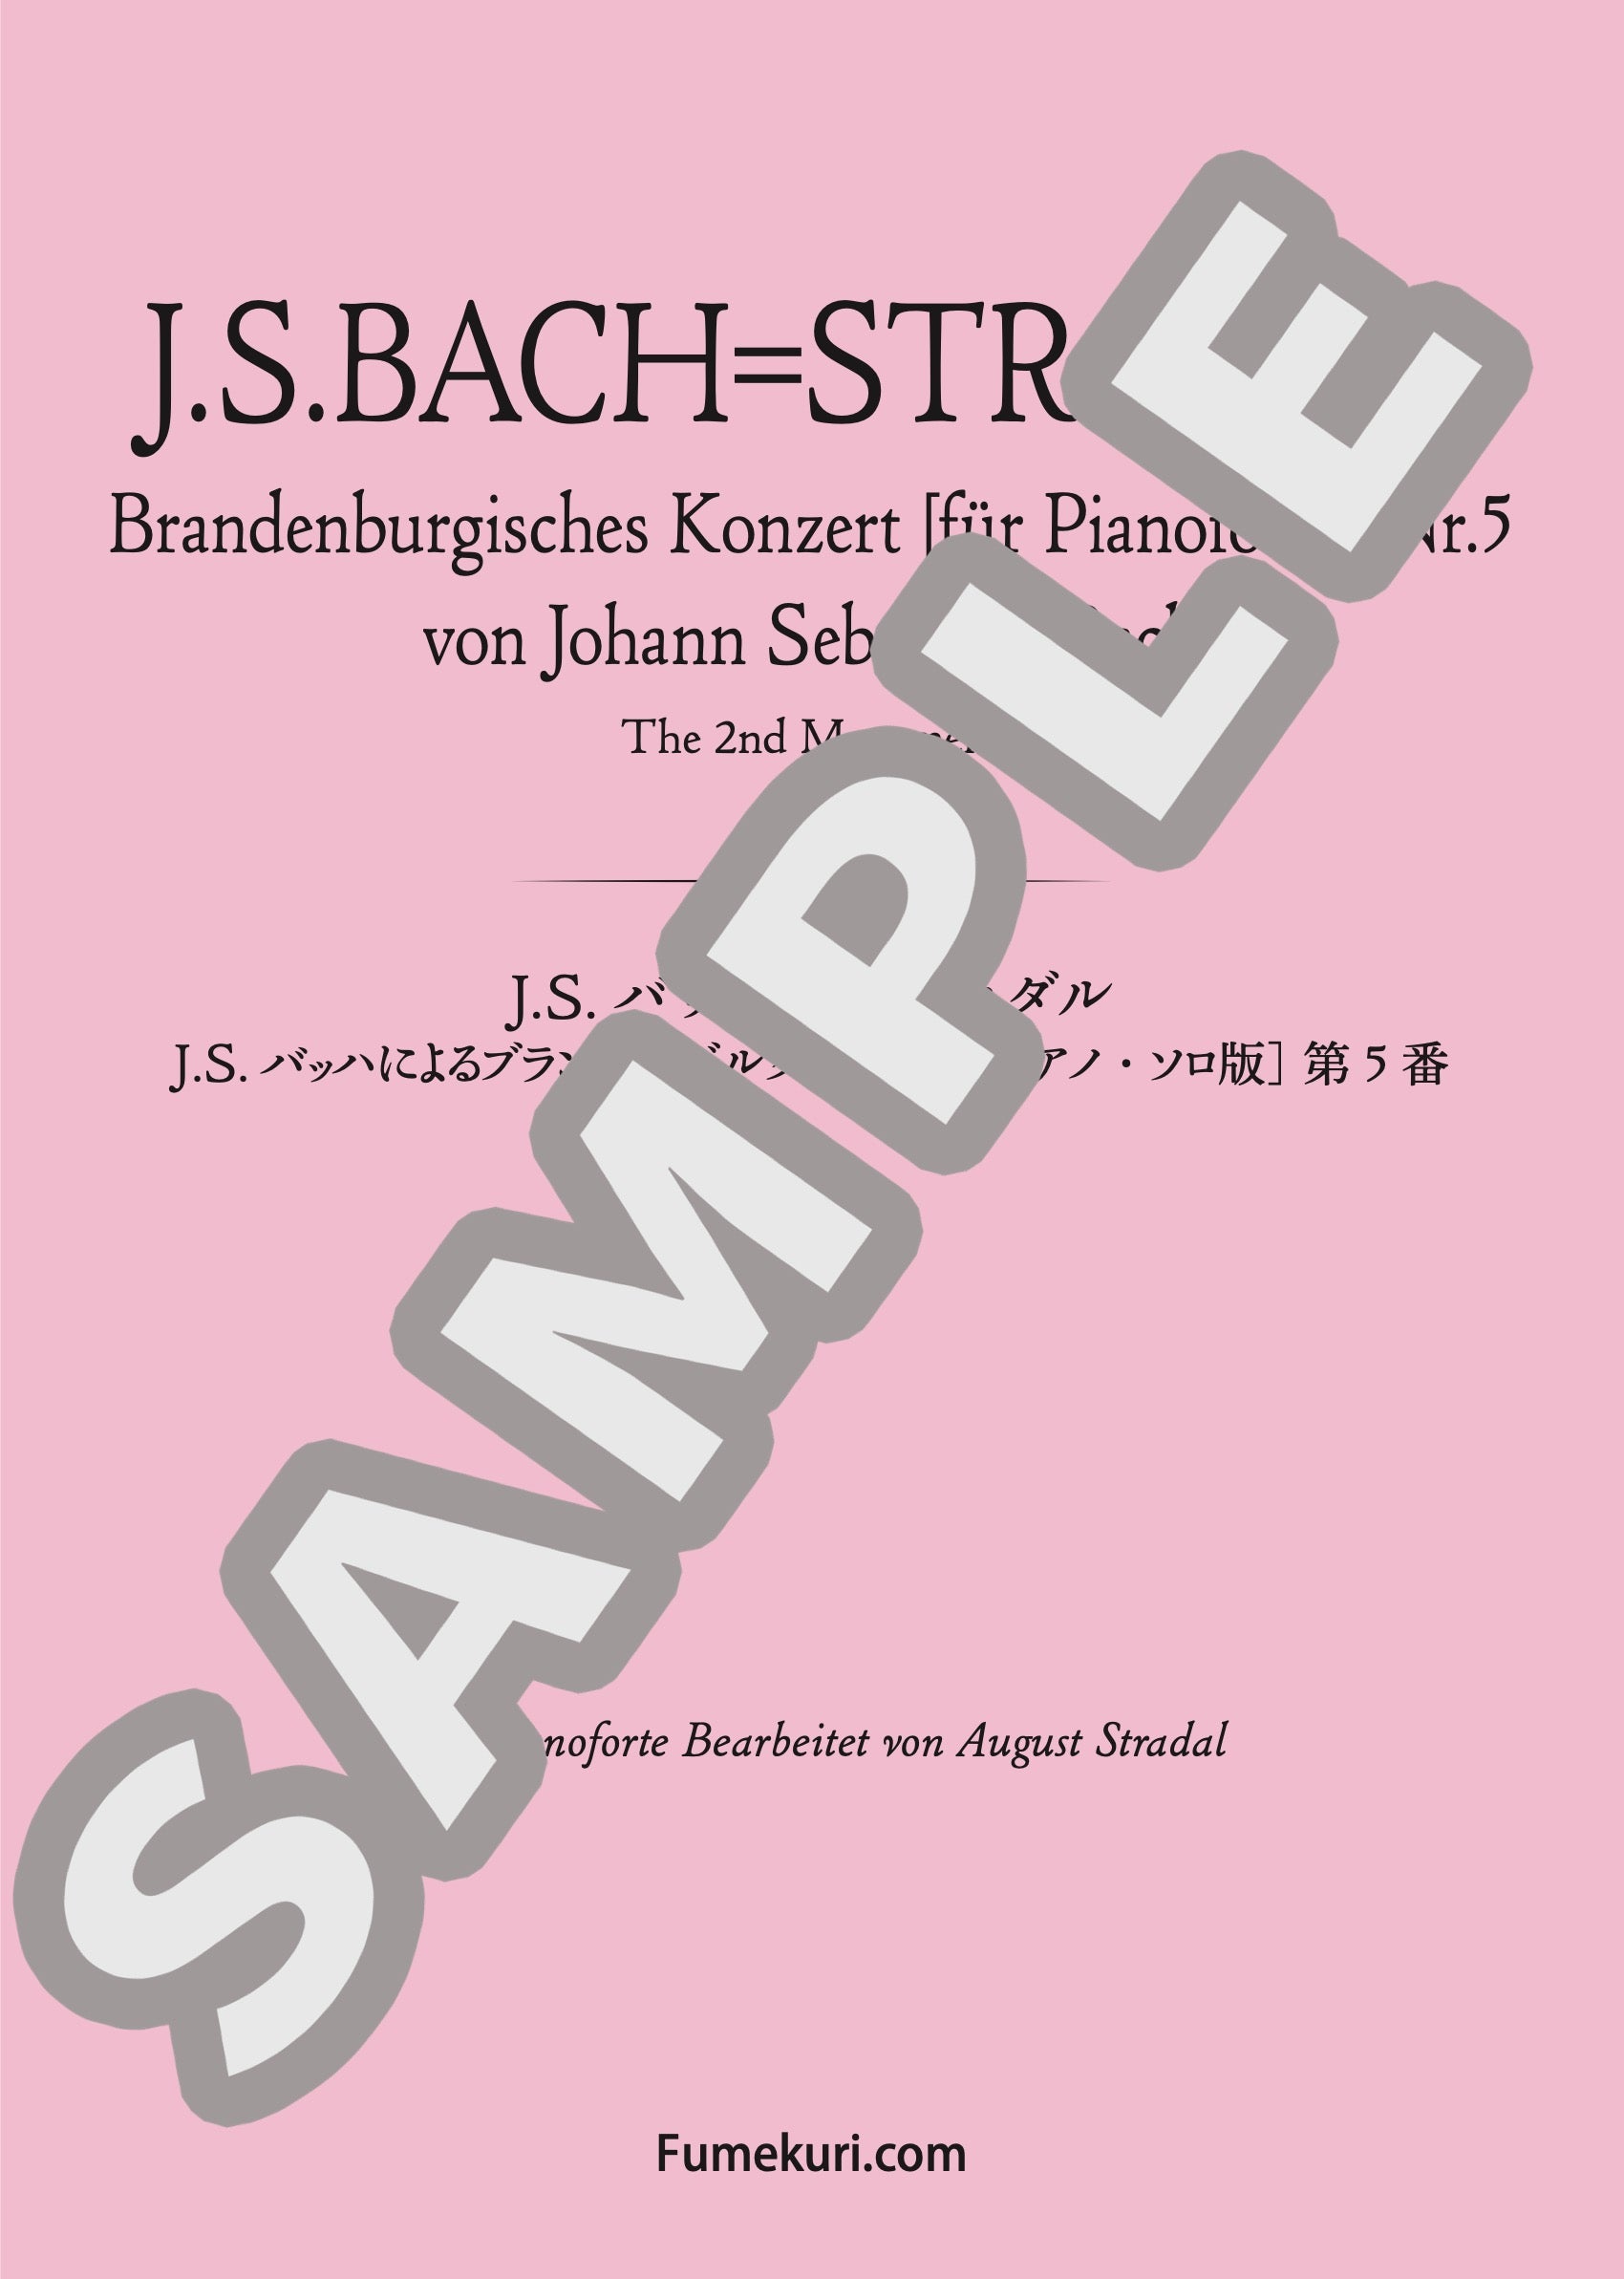 J.S.バッハによるブランデンブルク協奏曲 第5番 第2楽章 / クラシック